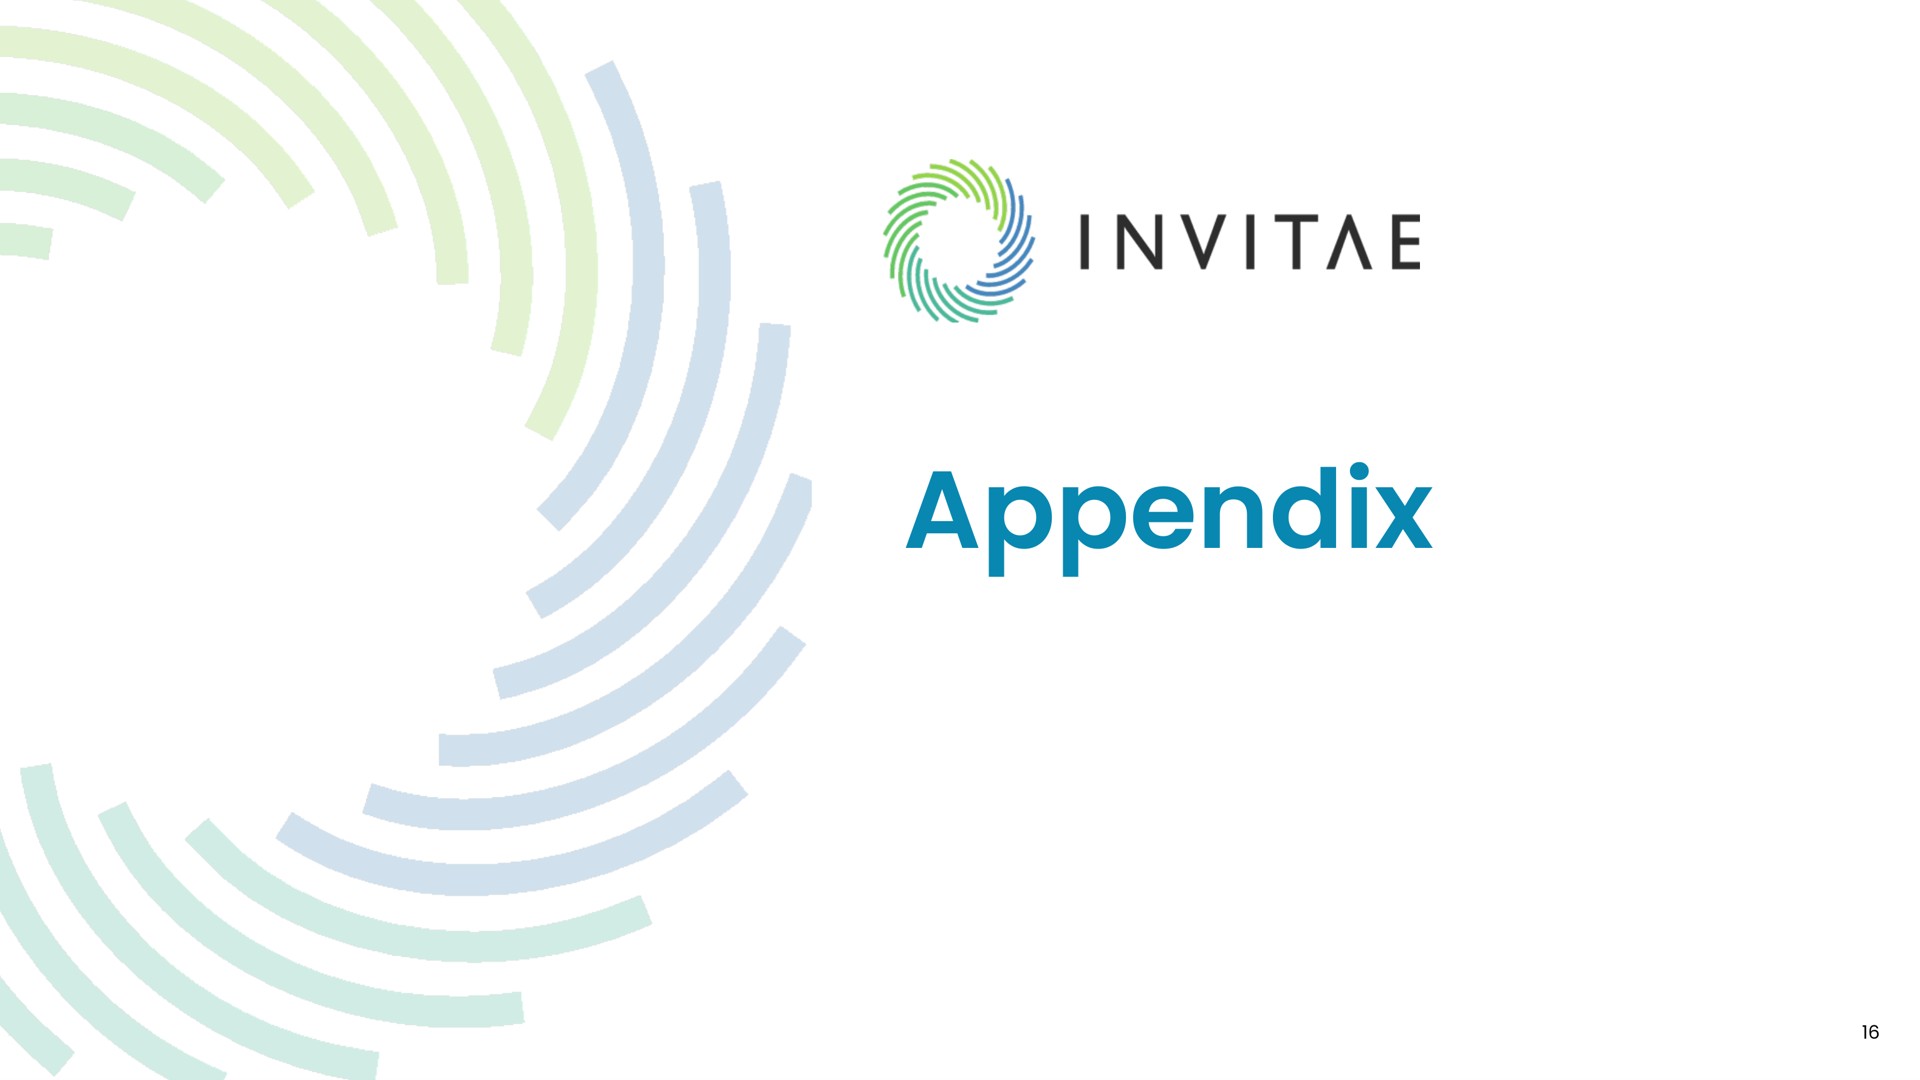 appendix an | Invitae